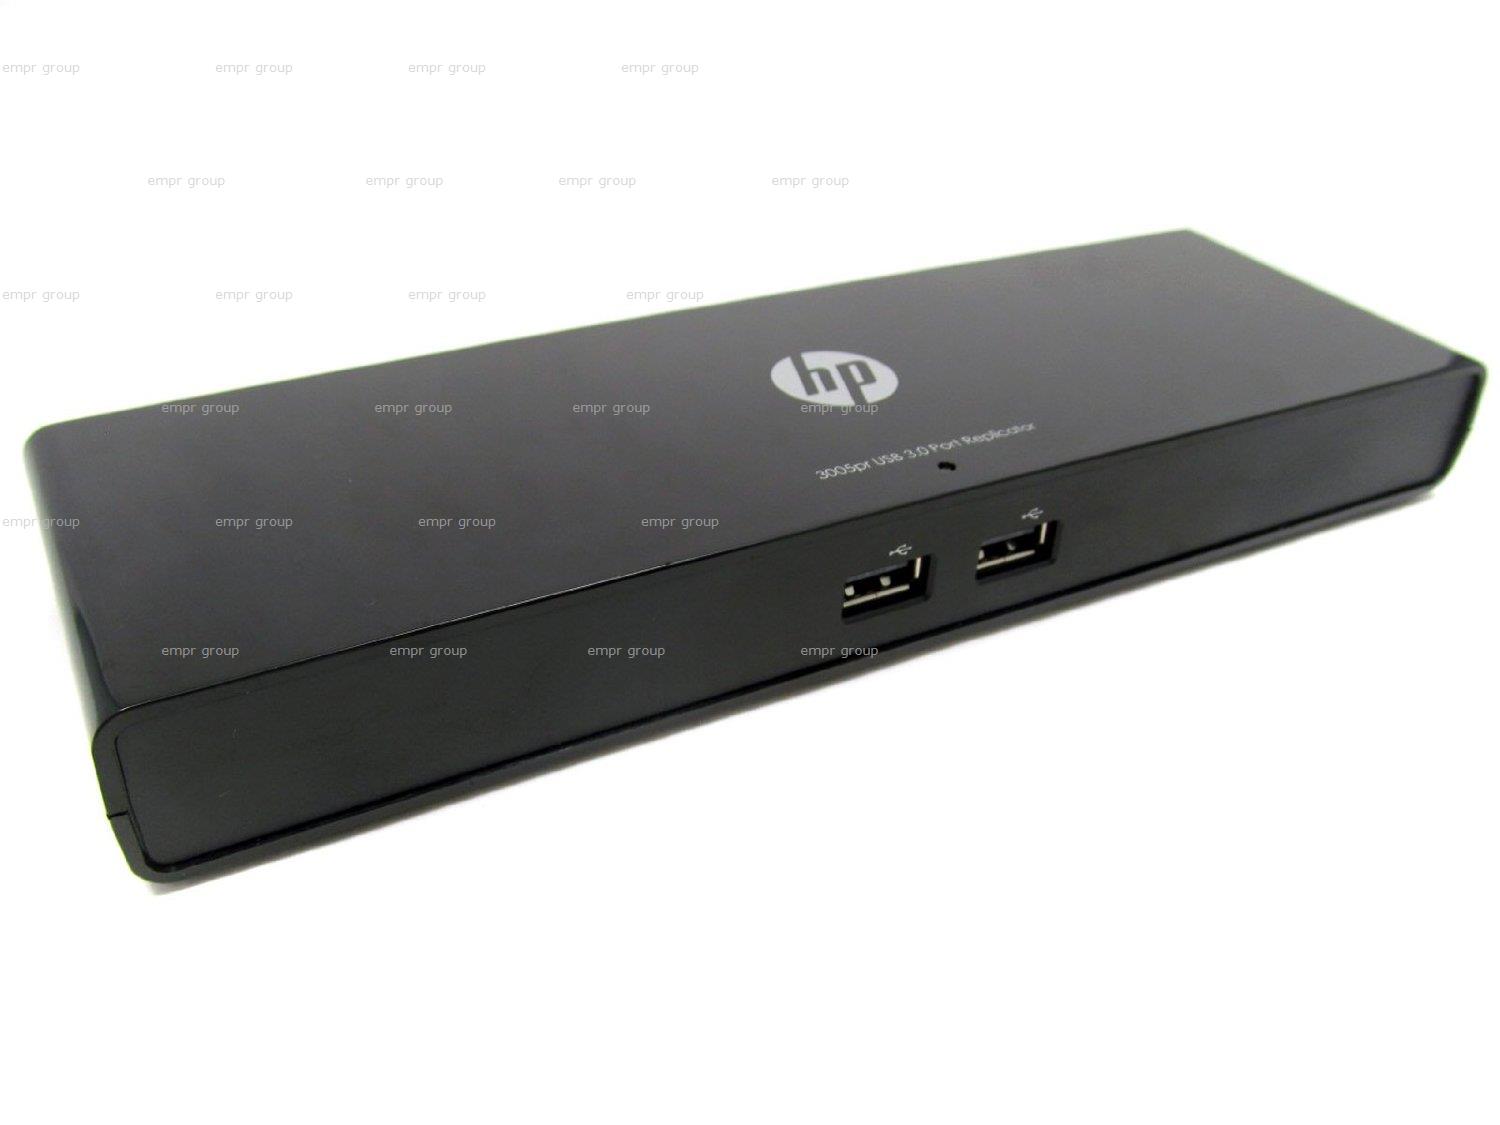 HP EliteBook 820 G1 Laptop (D7V74AV) Port Replicator 690650-001